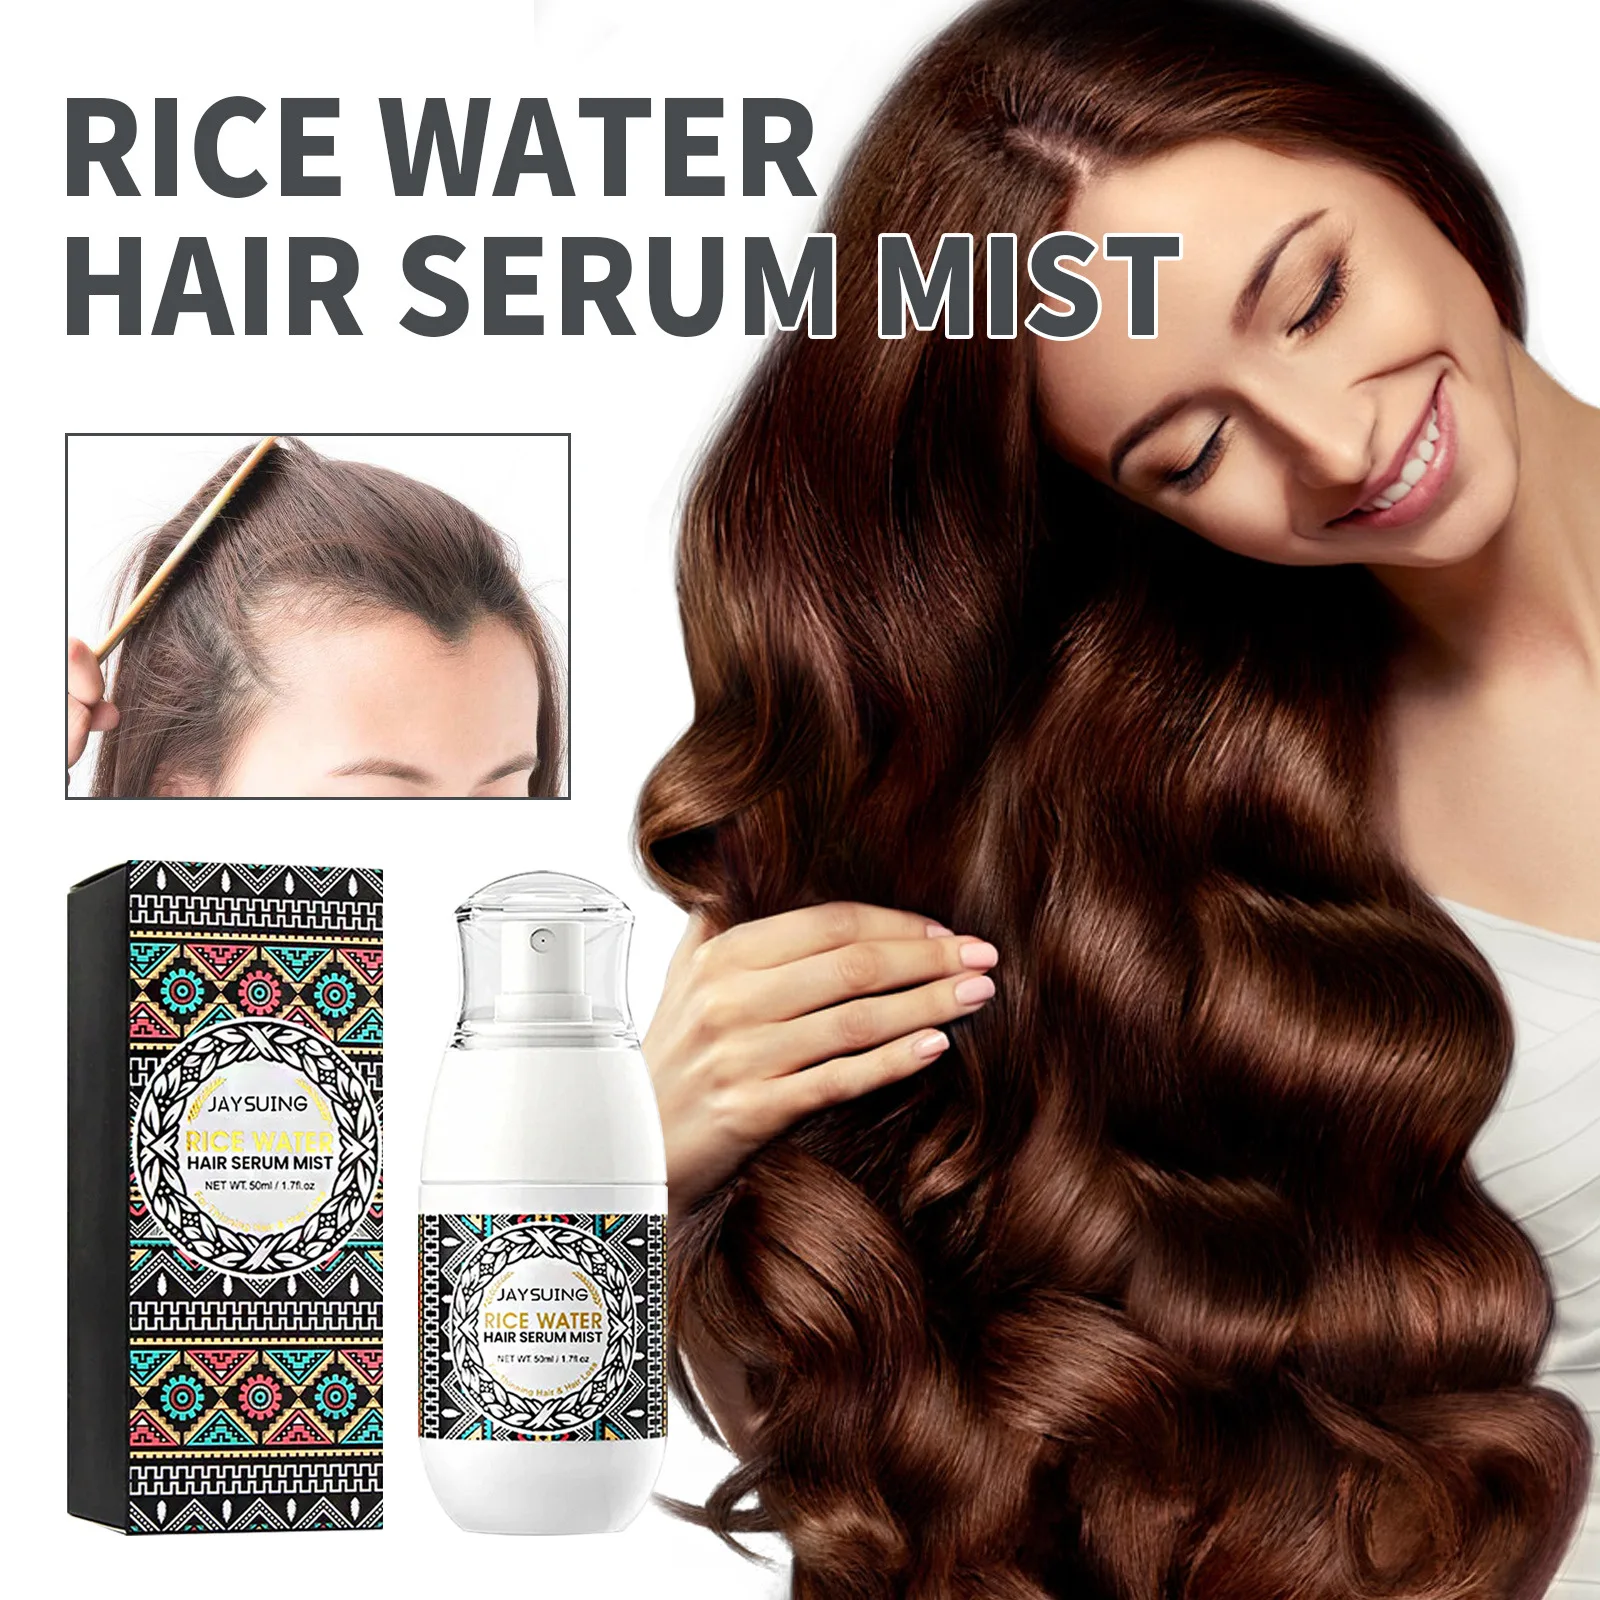 

Спрей для ухода за волосами Rice Water, 50 мл, увлажняет кожу головы, густые и мягкие волосы, мощный и упругий комфортный спрей для ухода за волосами